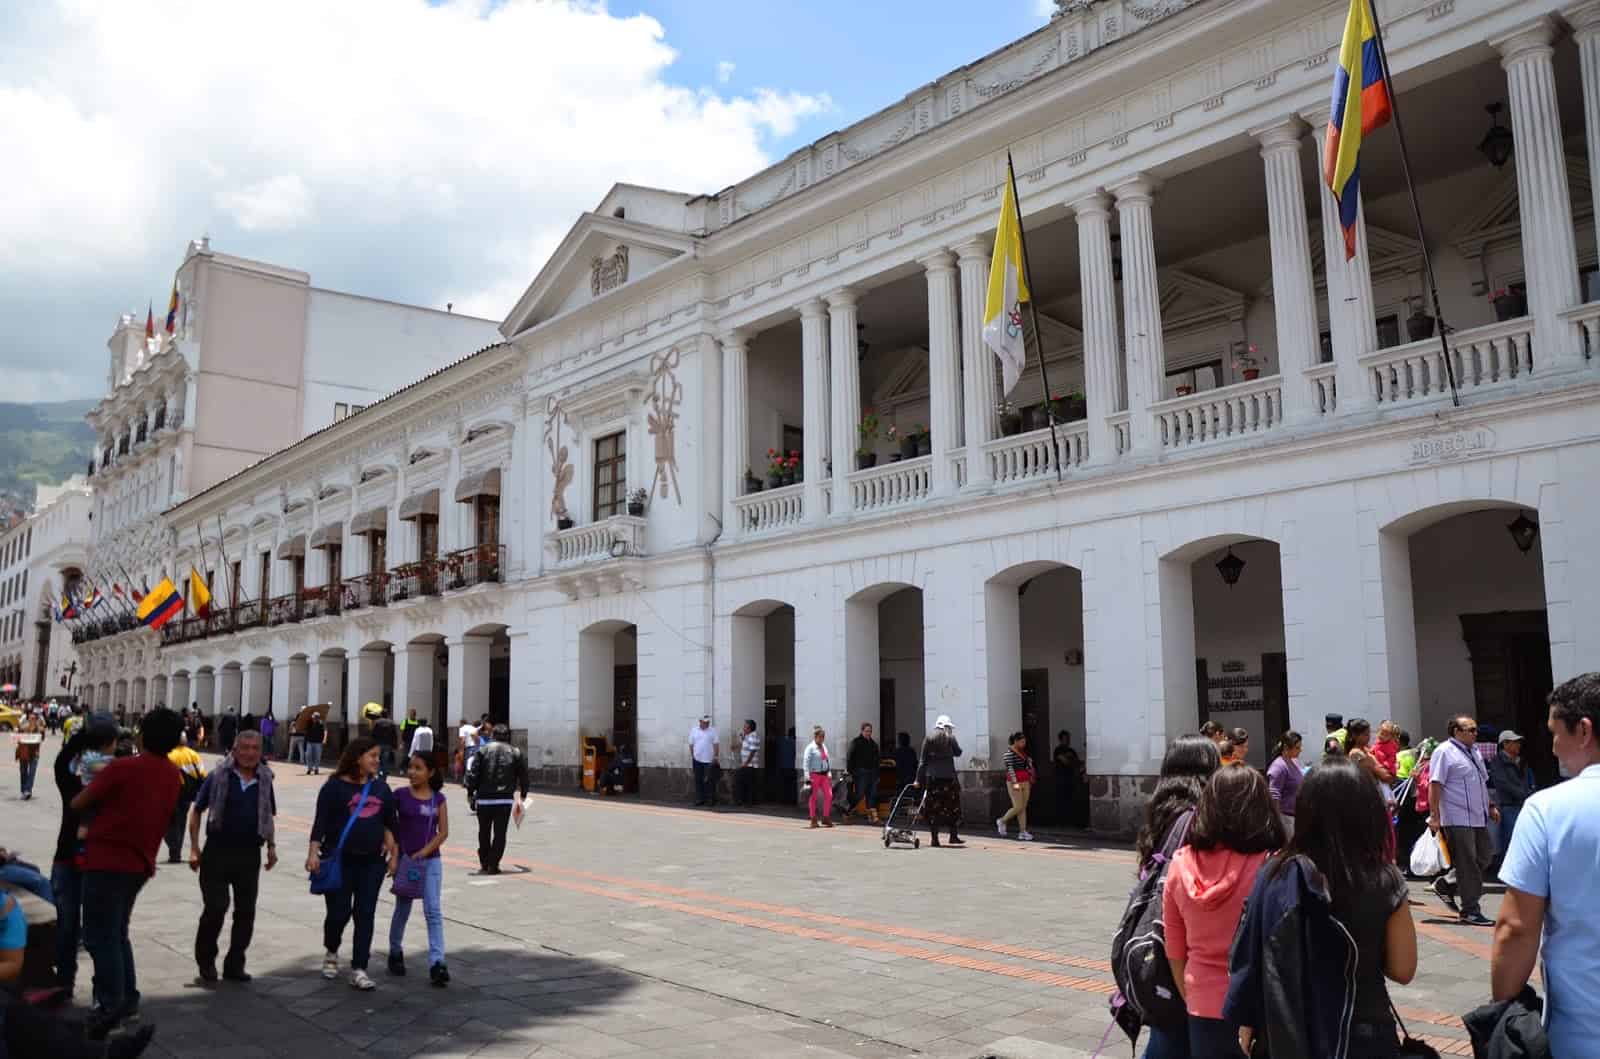 Palacio Arzobispal on Plaza Grande in Quito, Ecuador